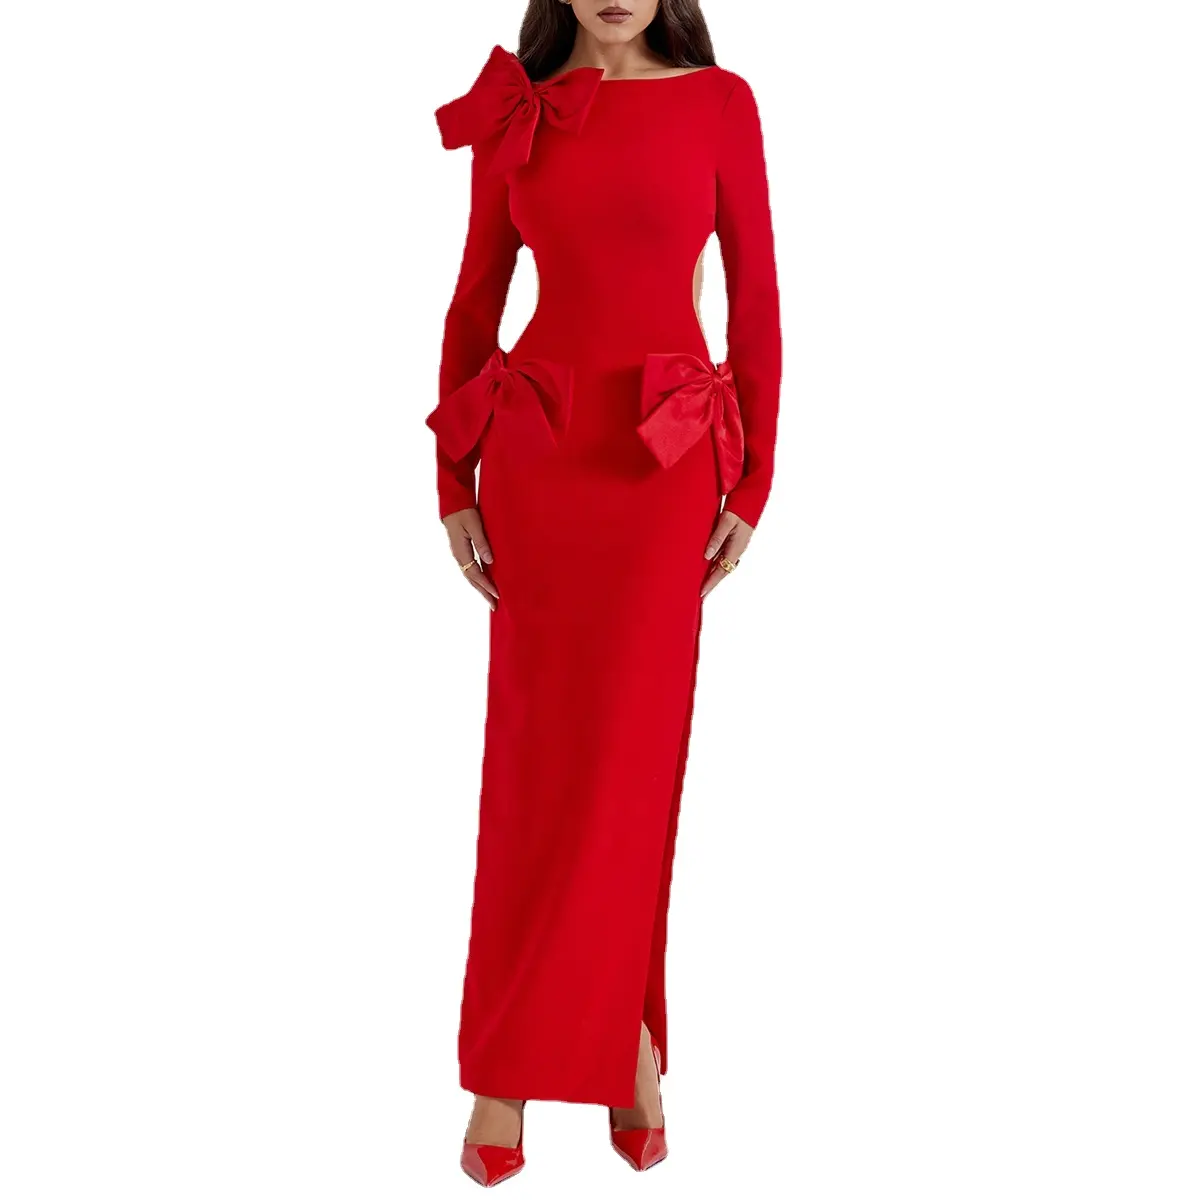 Maxi abito con fiocco rosso elegante GS-abbigliamento formale accattivante per eventi da Red Carpet